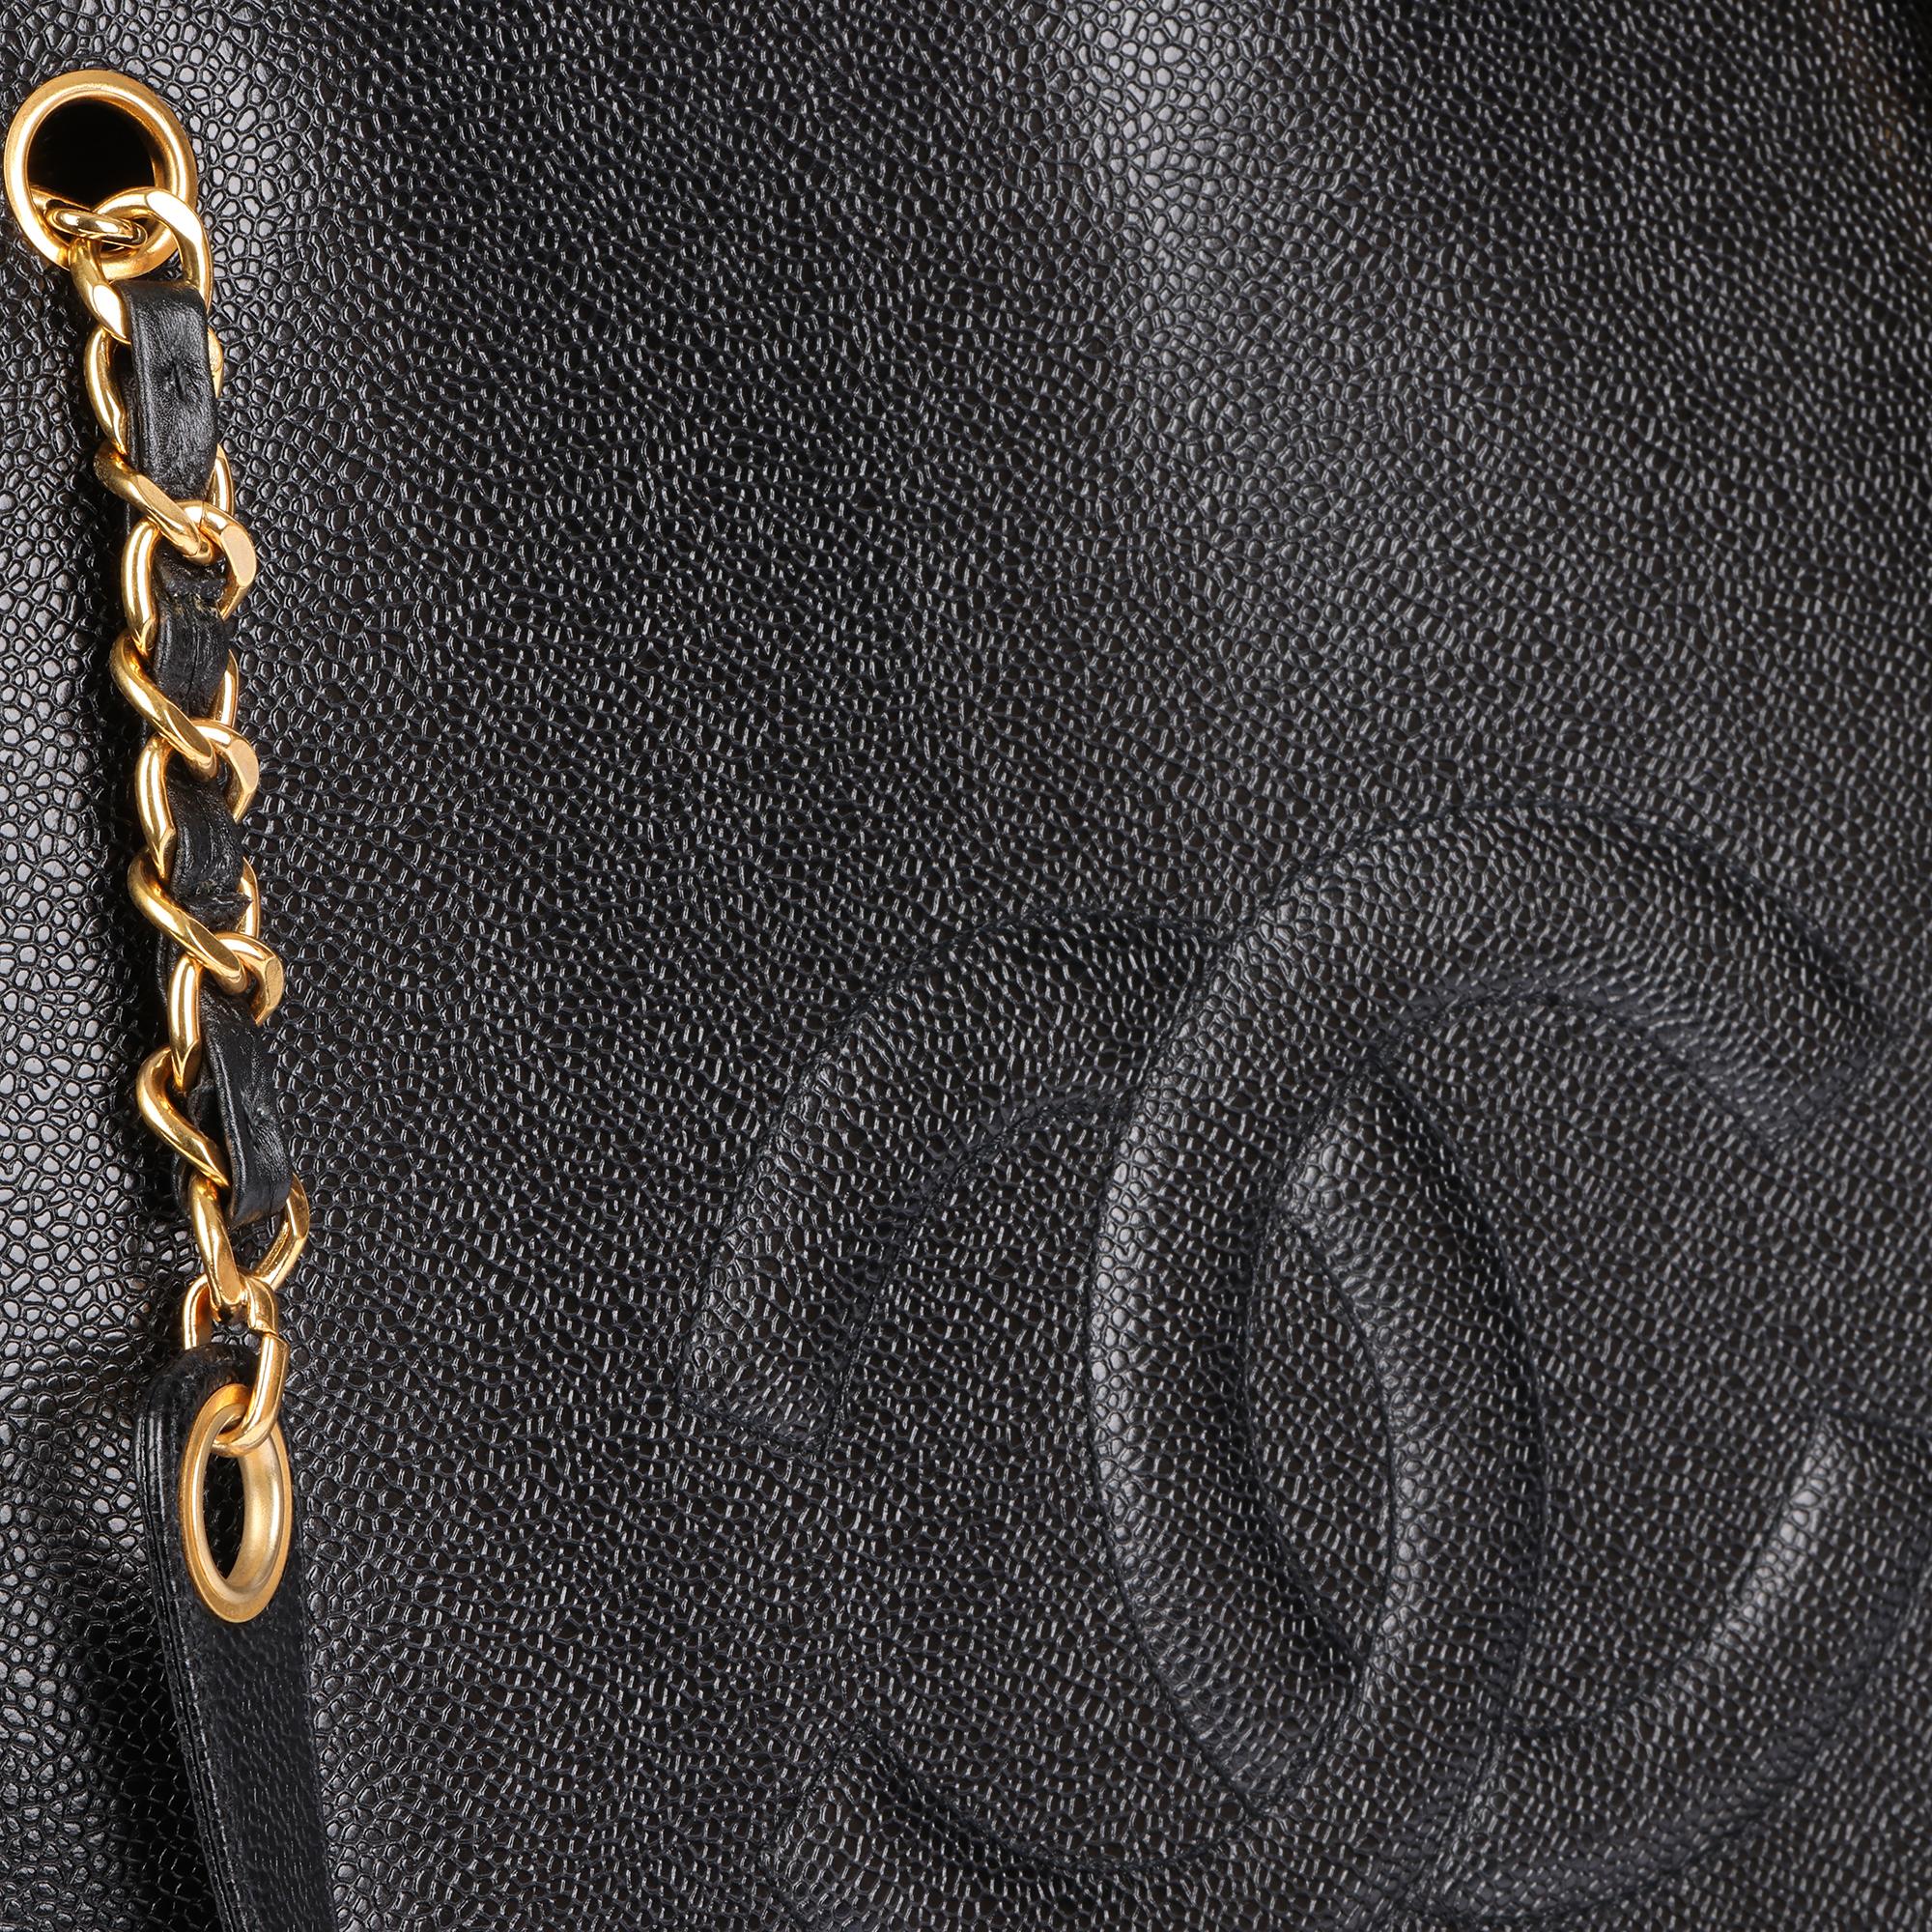 CHANEL Black Caviar Leather Vintage Timeless Shoulder Bag For Sale 3